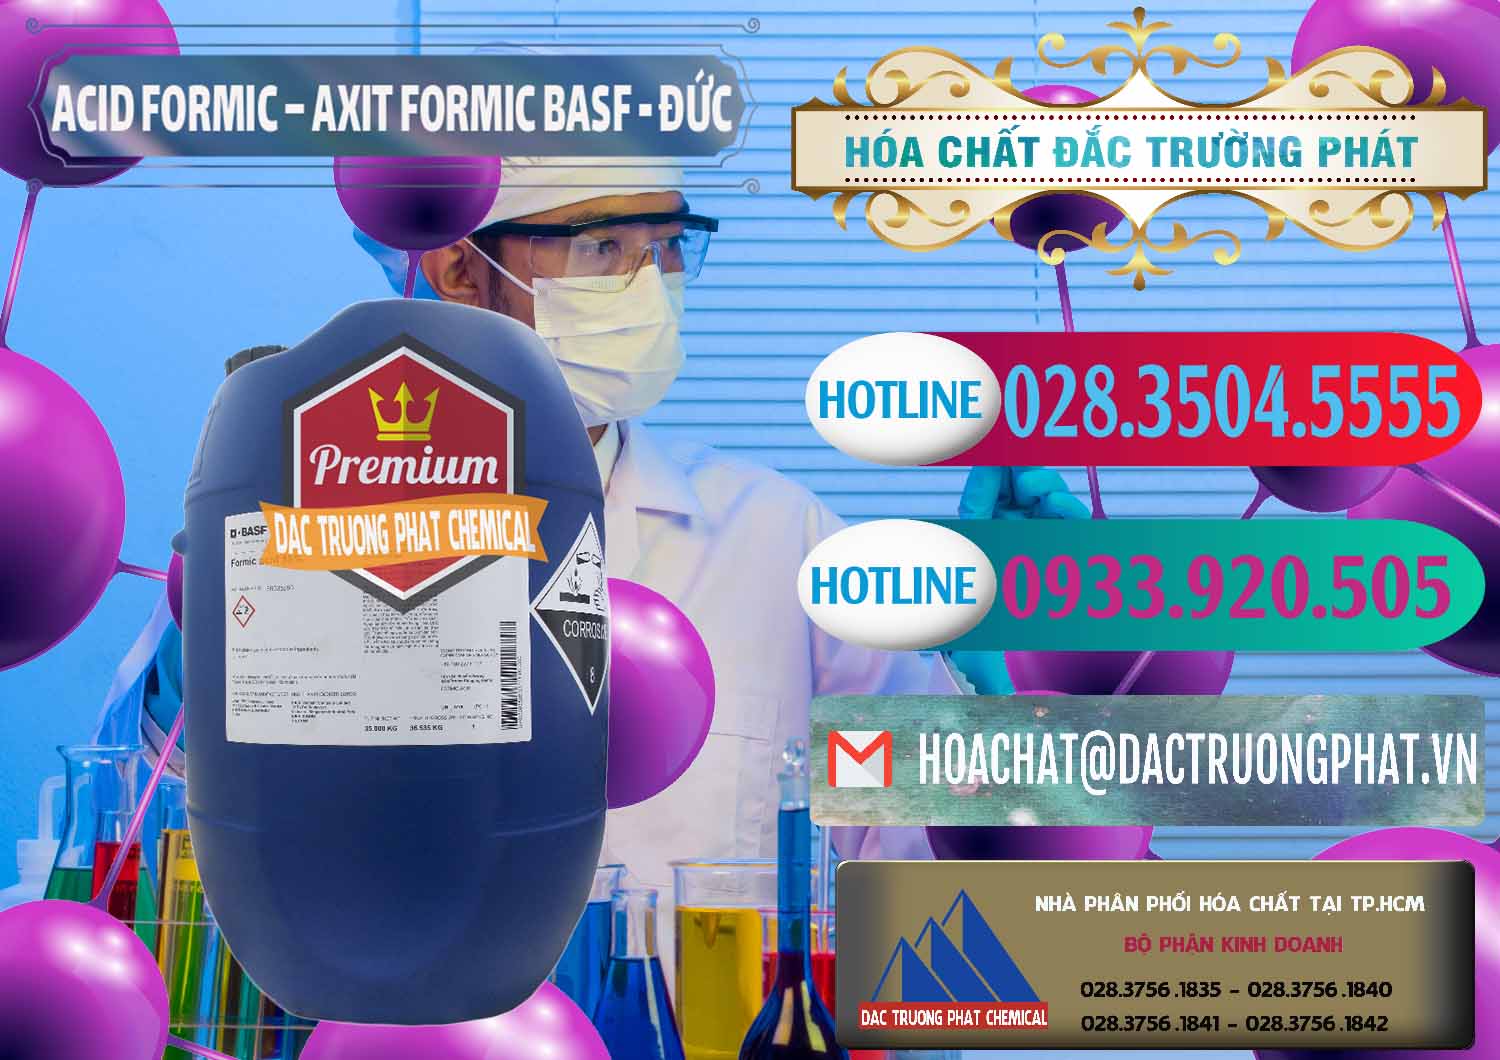 Công ty chuyên nhập khẩu và bán Acid Formic - Axit Formic BASF Đức Germany - 0028 - Cty chuyên bán - phân phối hóa chất tại TP.HCM - truongphat.vn